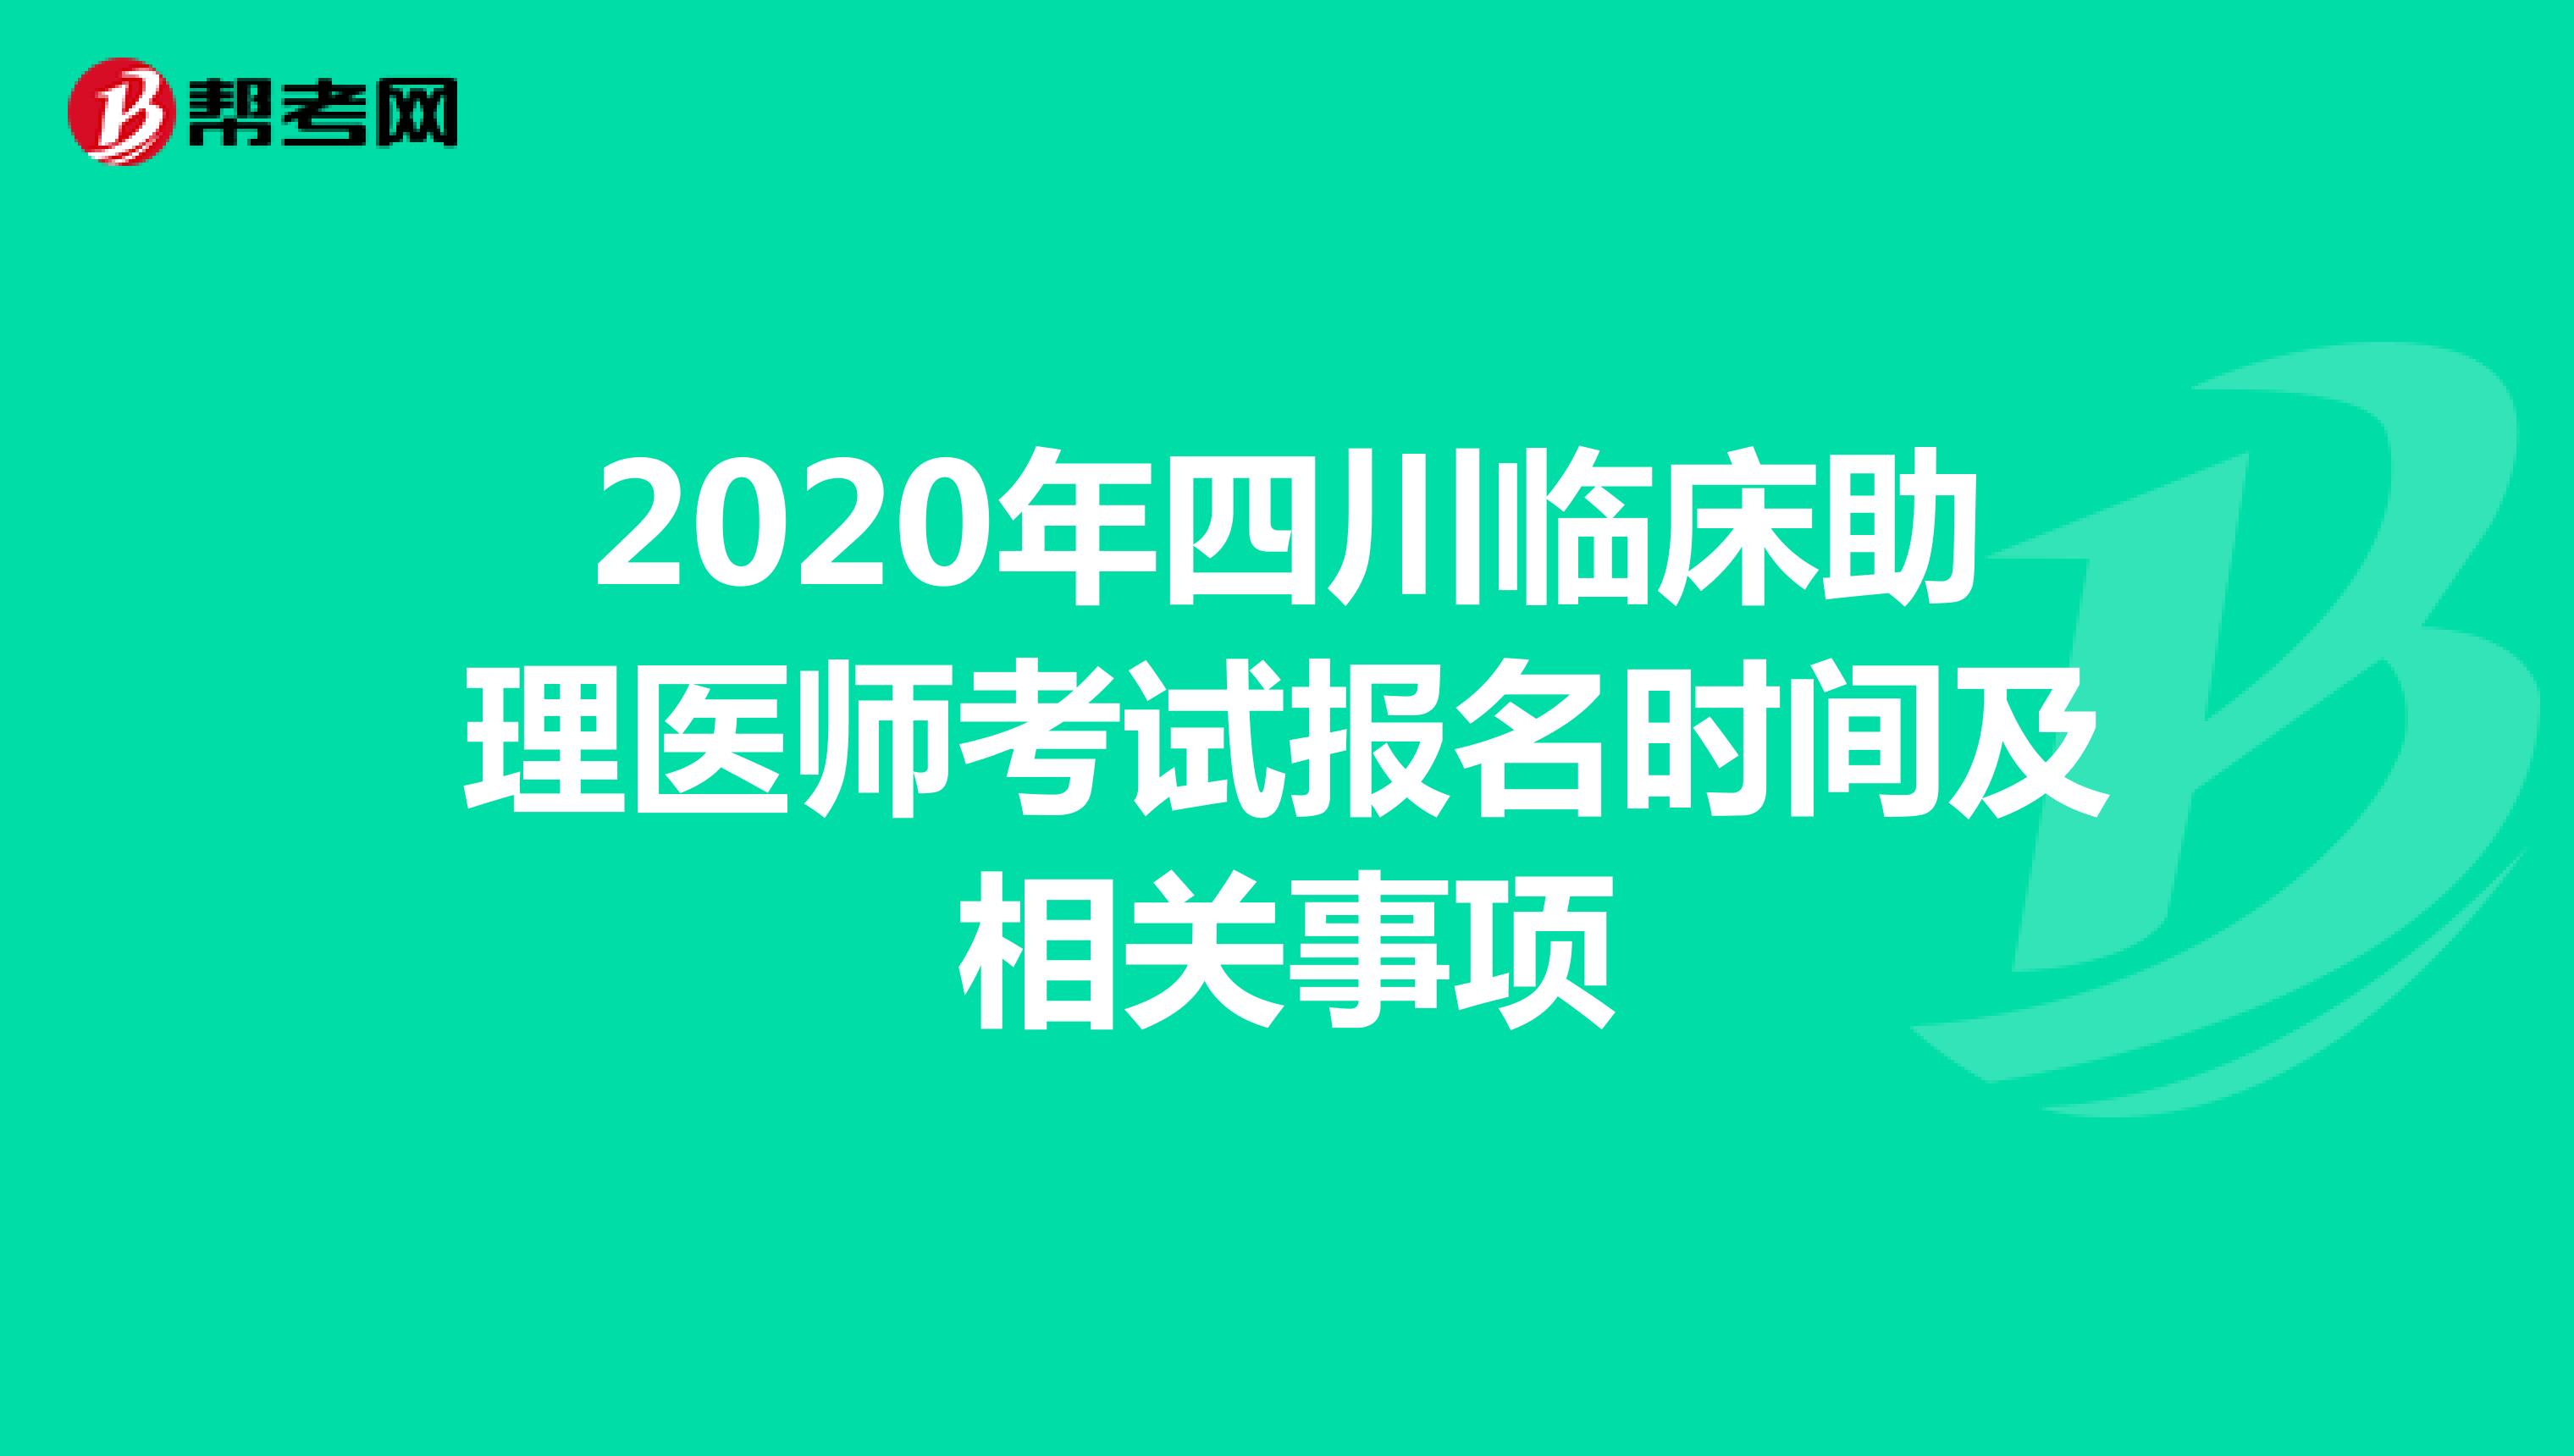 2021年四川临床助理医师考试报名时间及相关事项